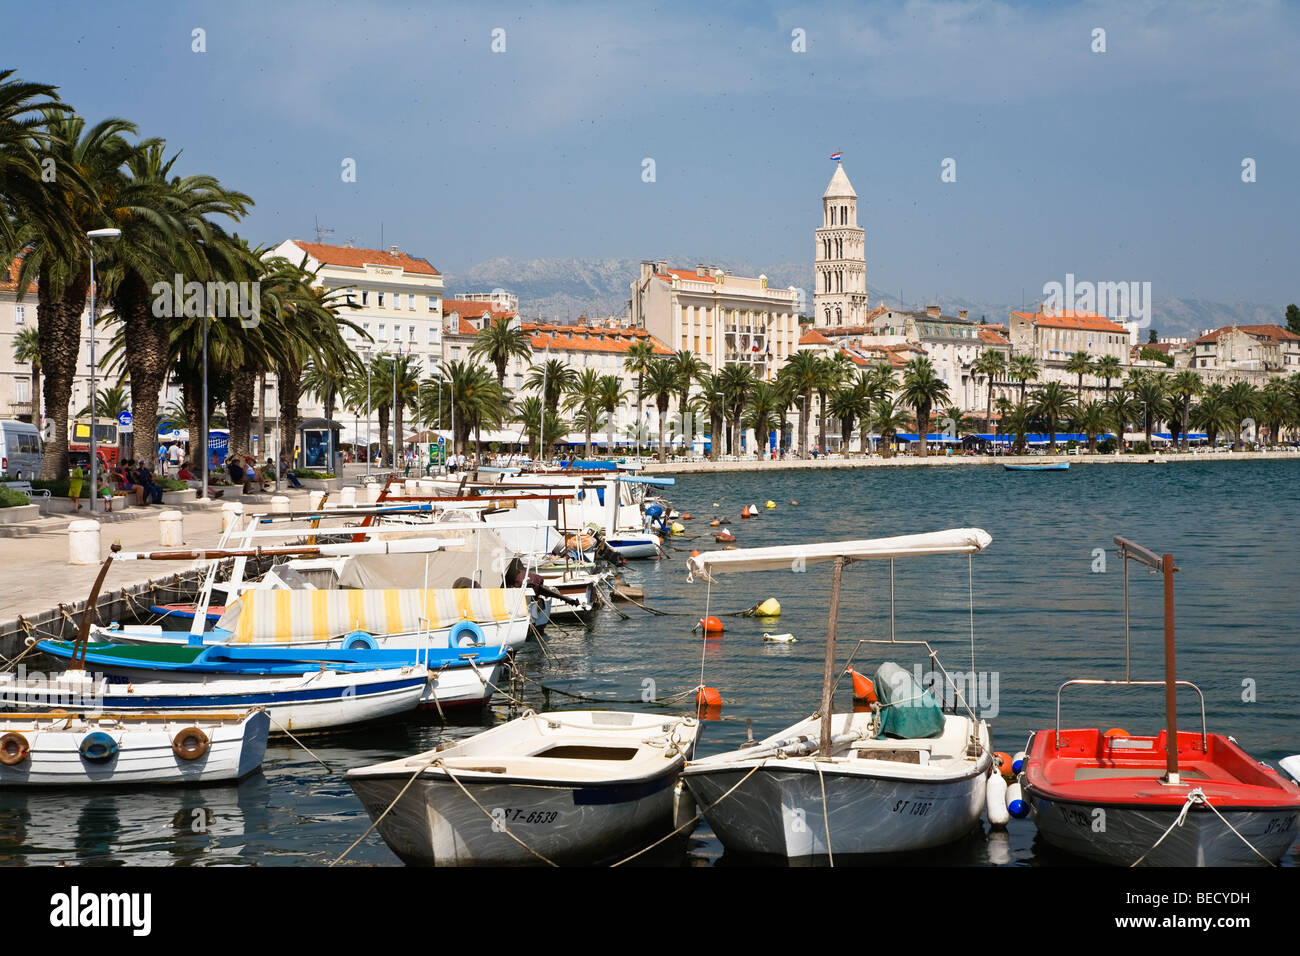 Seaside promenade of Riva, Split, Dalmatia, Croatia, Adriatic Sea, Mediterranean, Europe Stock Photo